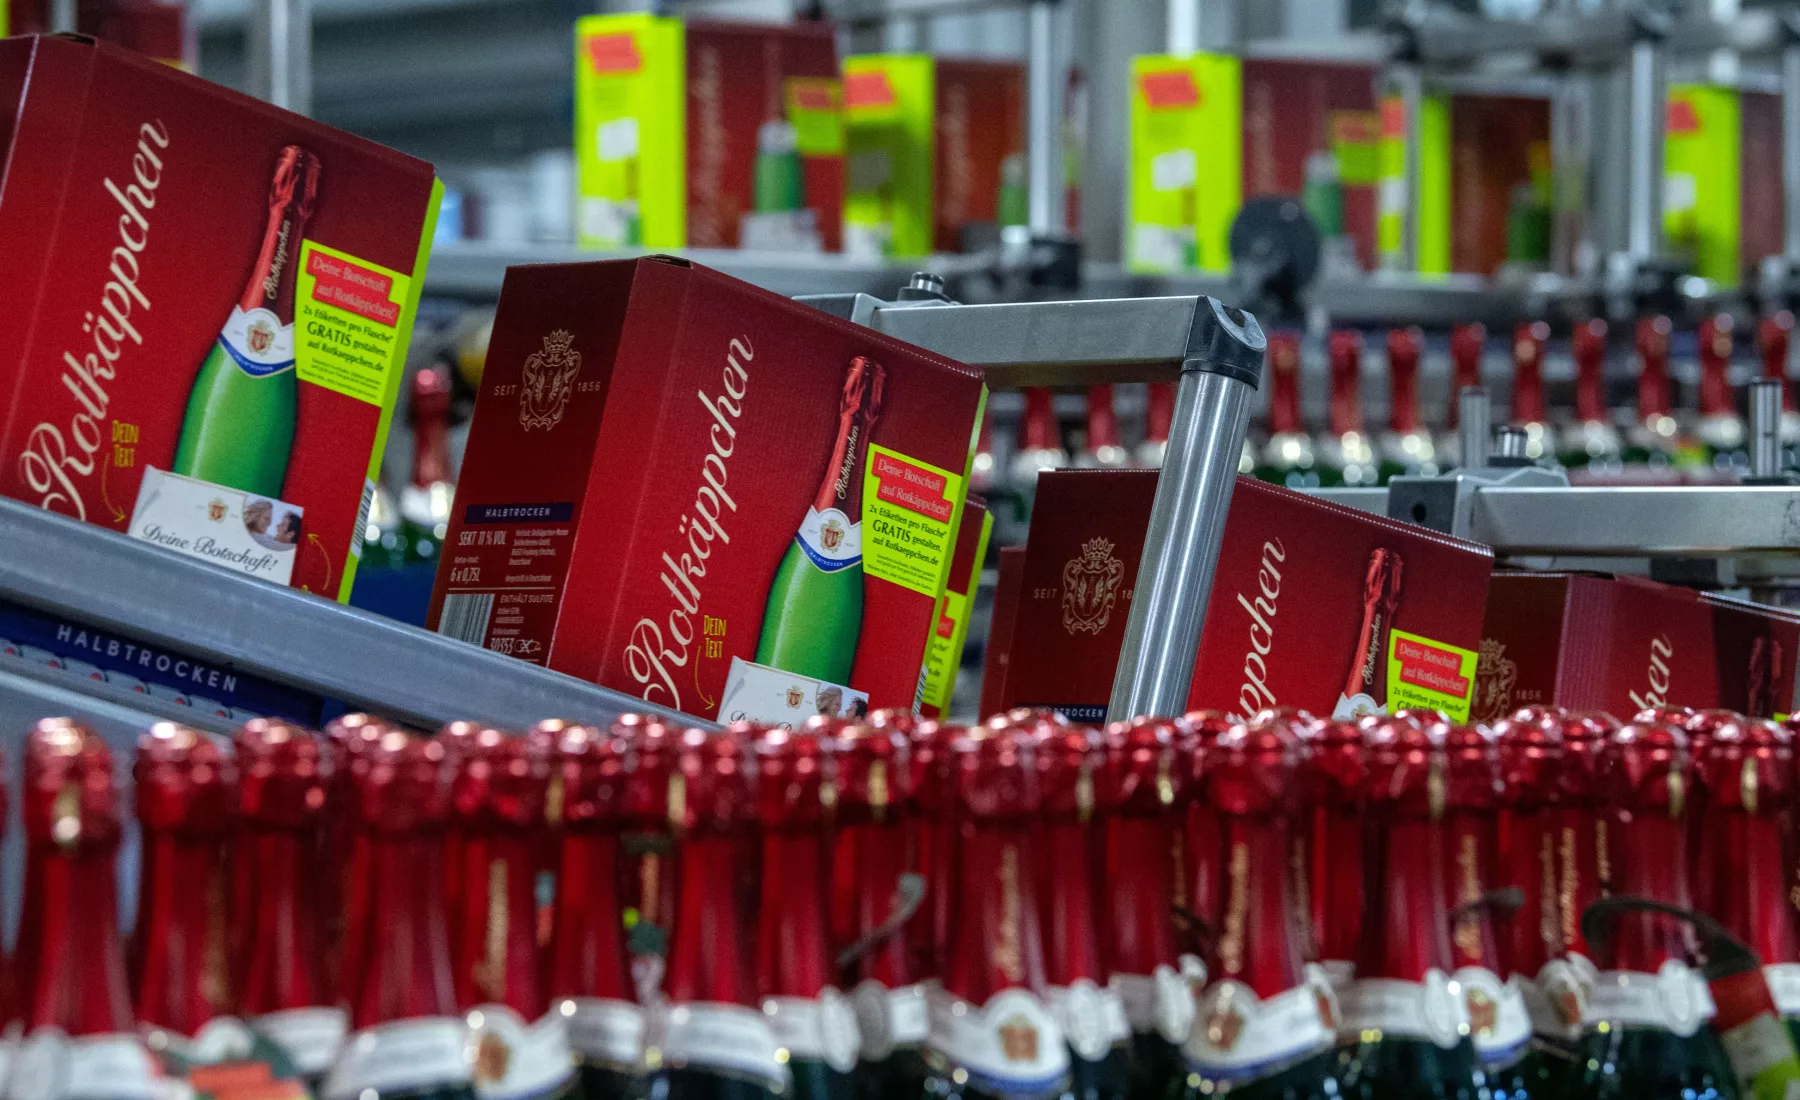 Sektflaschen werden in der Rotkäppchen Sektkellerei in Freyburg verpackt.